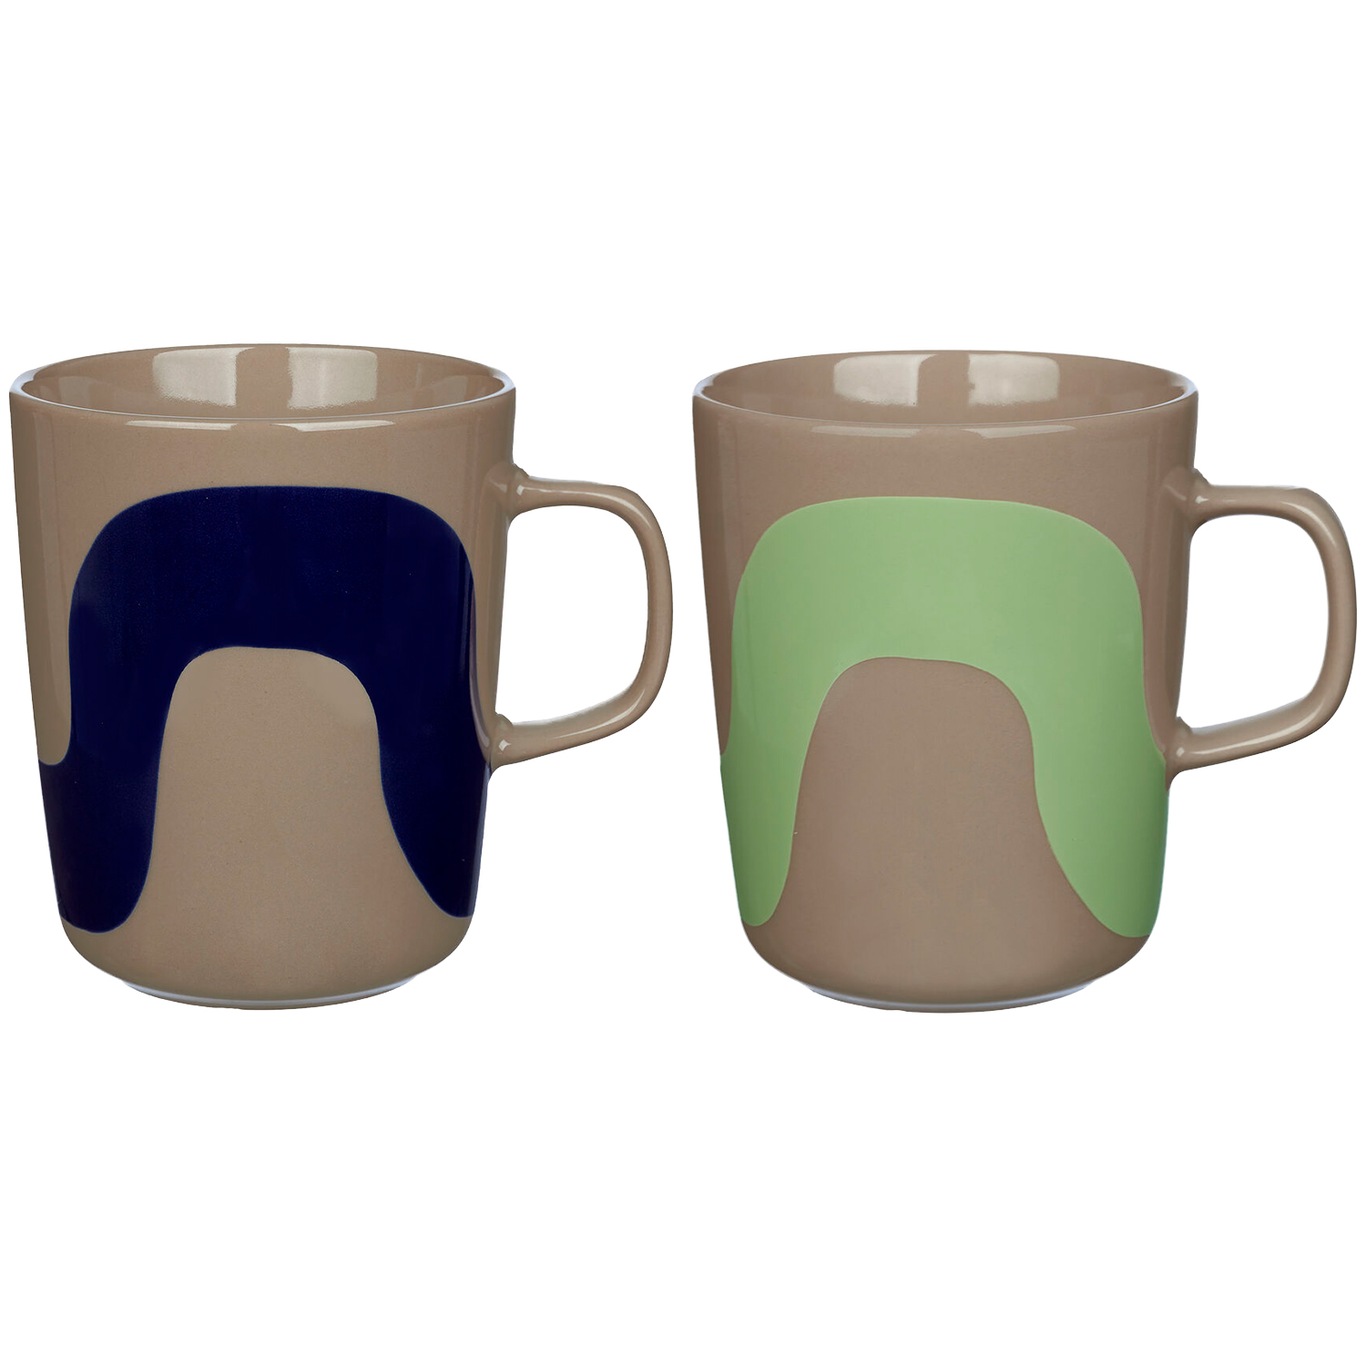 Oiva/Seireeni Kaffekopper, Laget av brunt stentøy med et bølgete mønster i ulike farger 2-pk 25 cl 2-pk, Mørkeblå/Terra / Mintgrønn